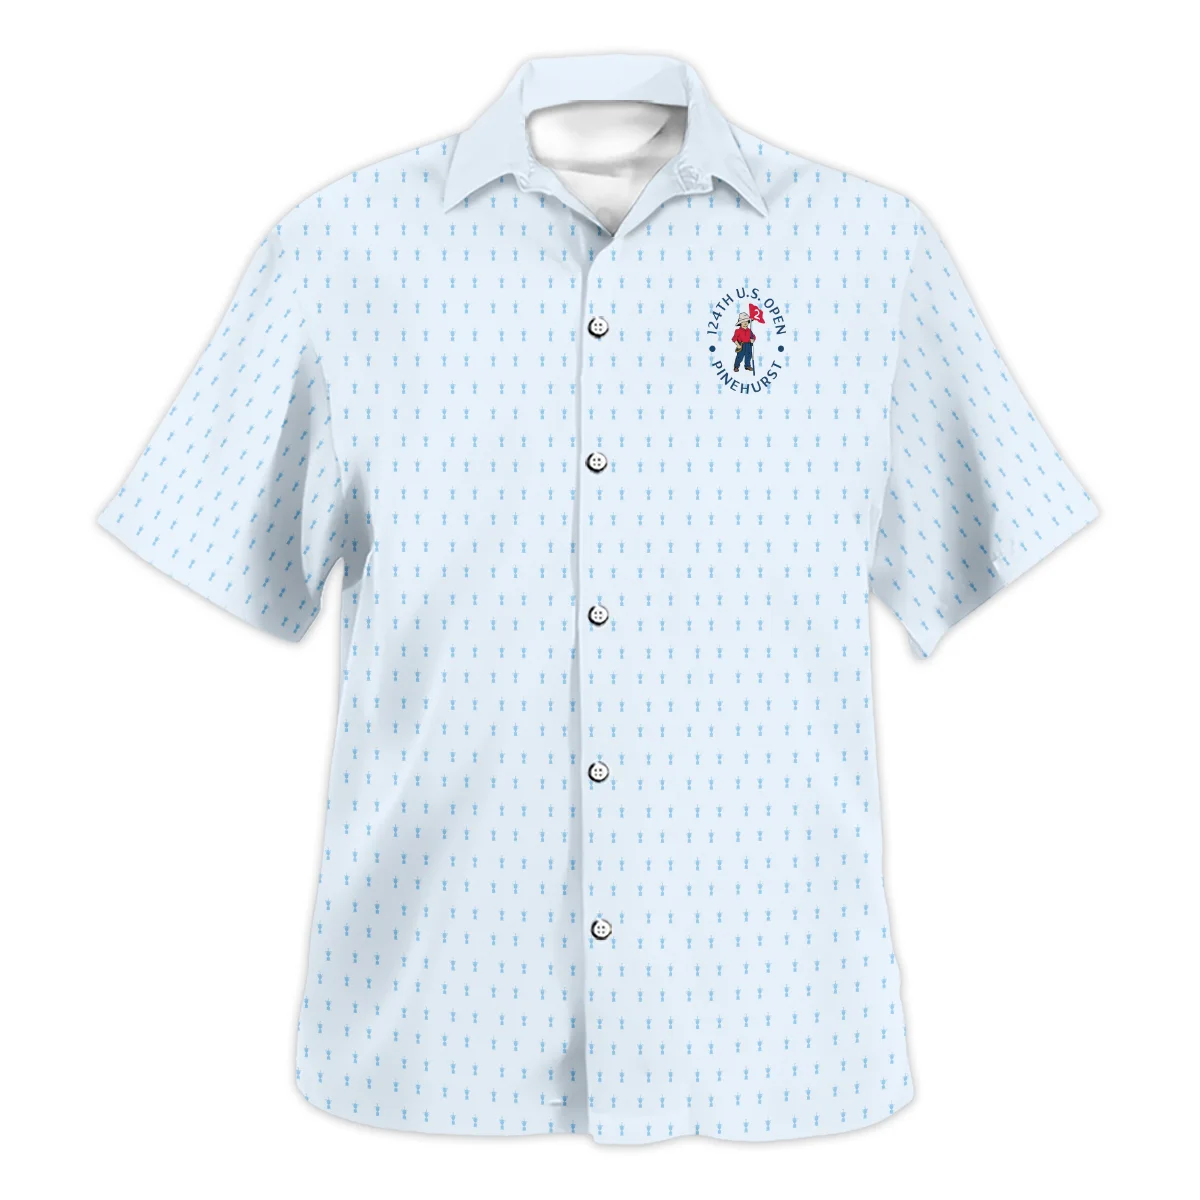 Golf Pattern Cup Light Blue Green 124th U.S. Open Pinehurst Zipper Hoodie Shirt Style Classic Zipper Hoodie Shirt